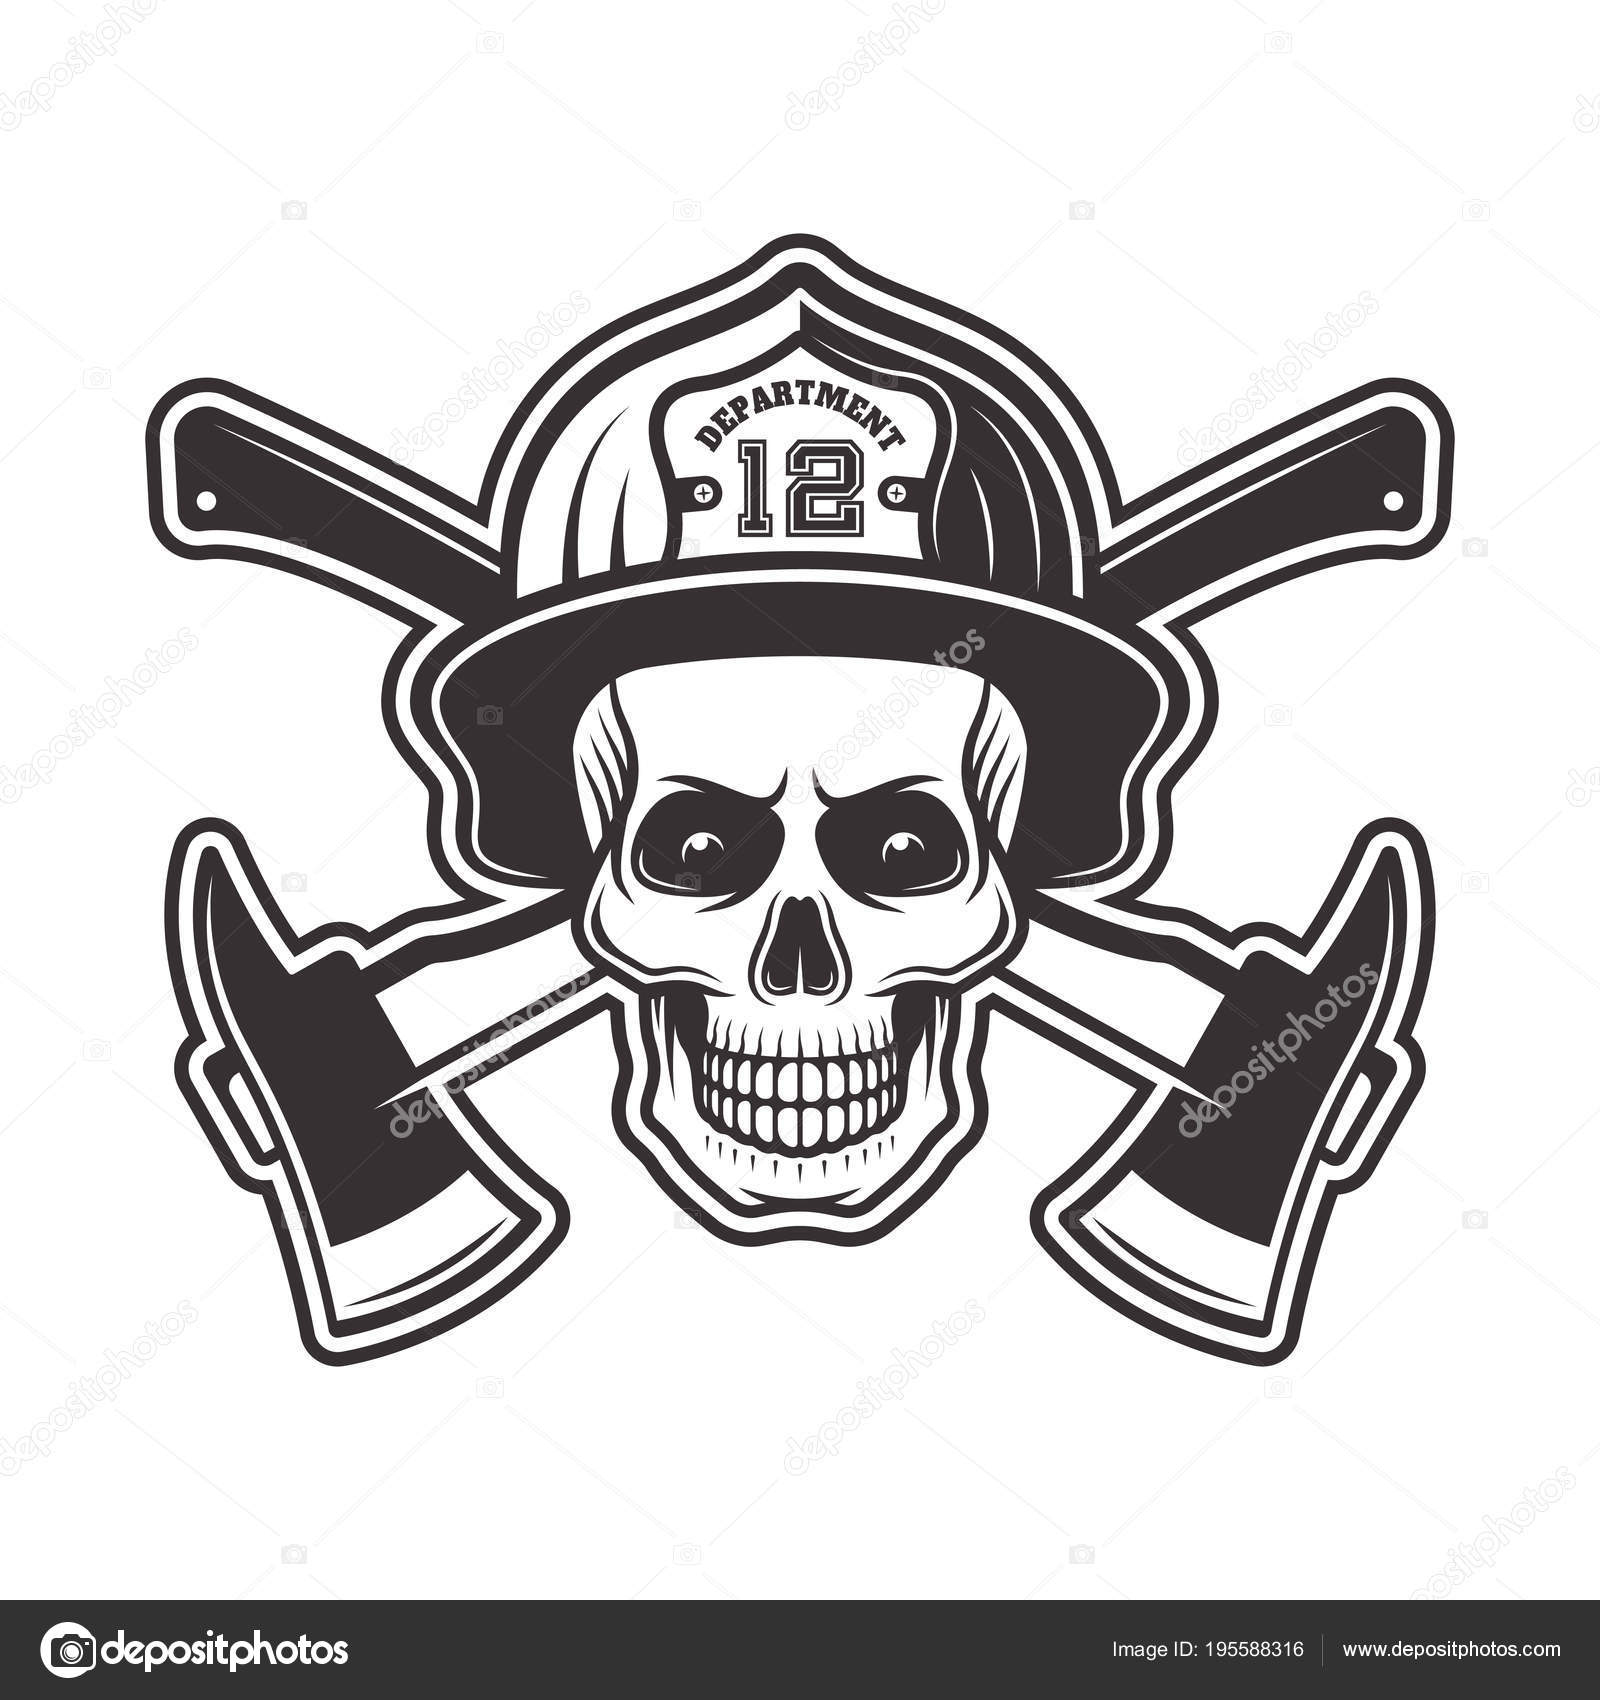 firefighter-skulls-firefighter-skull-in-helmet-vector-illustration